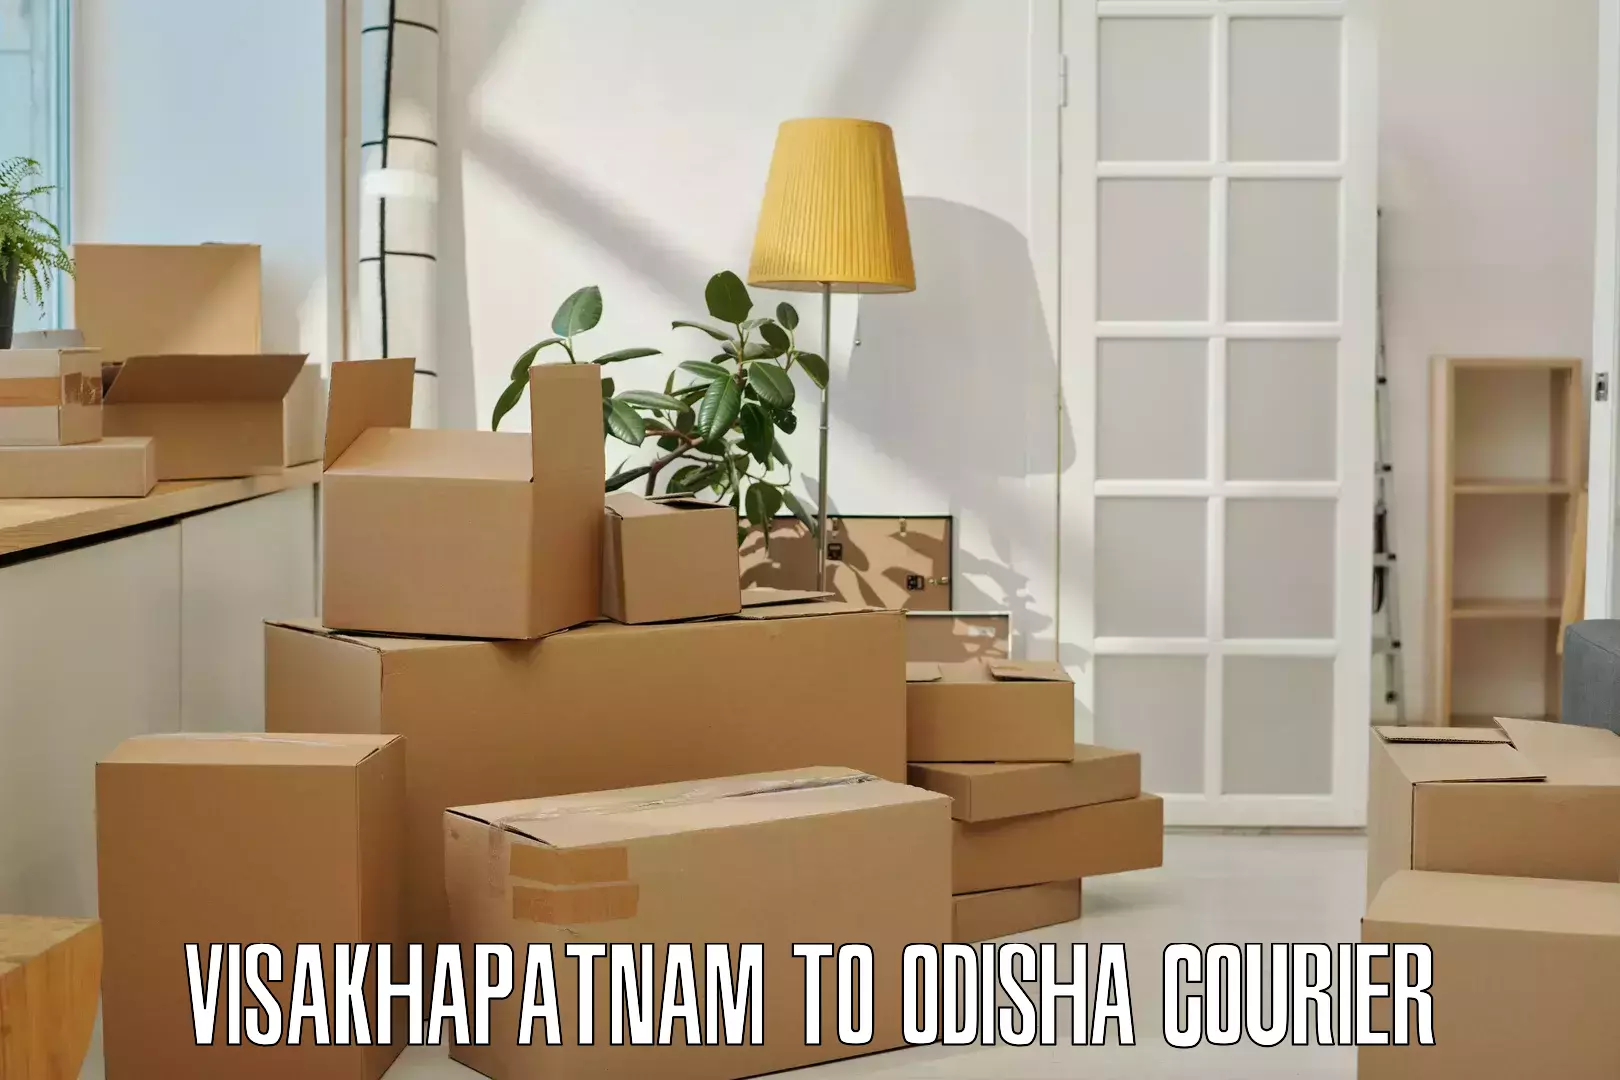 Nationwide shipping coverage Visakhapatnam to Odisha